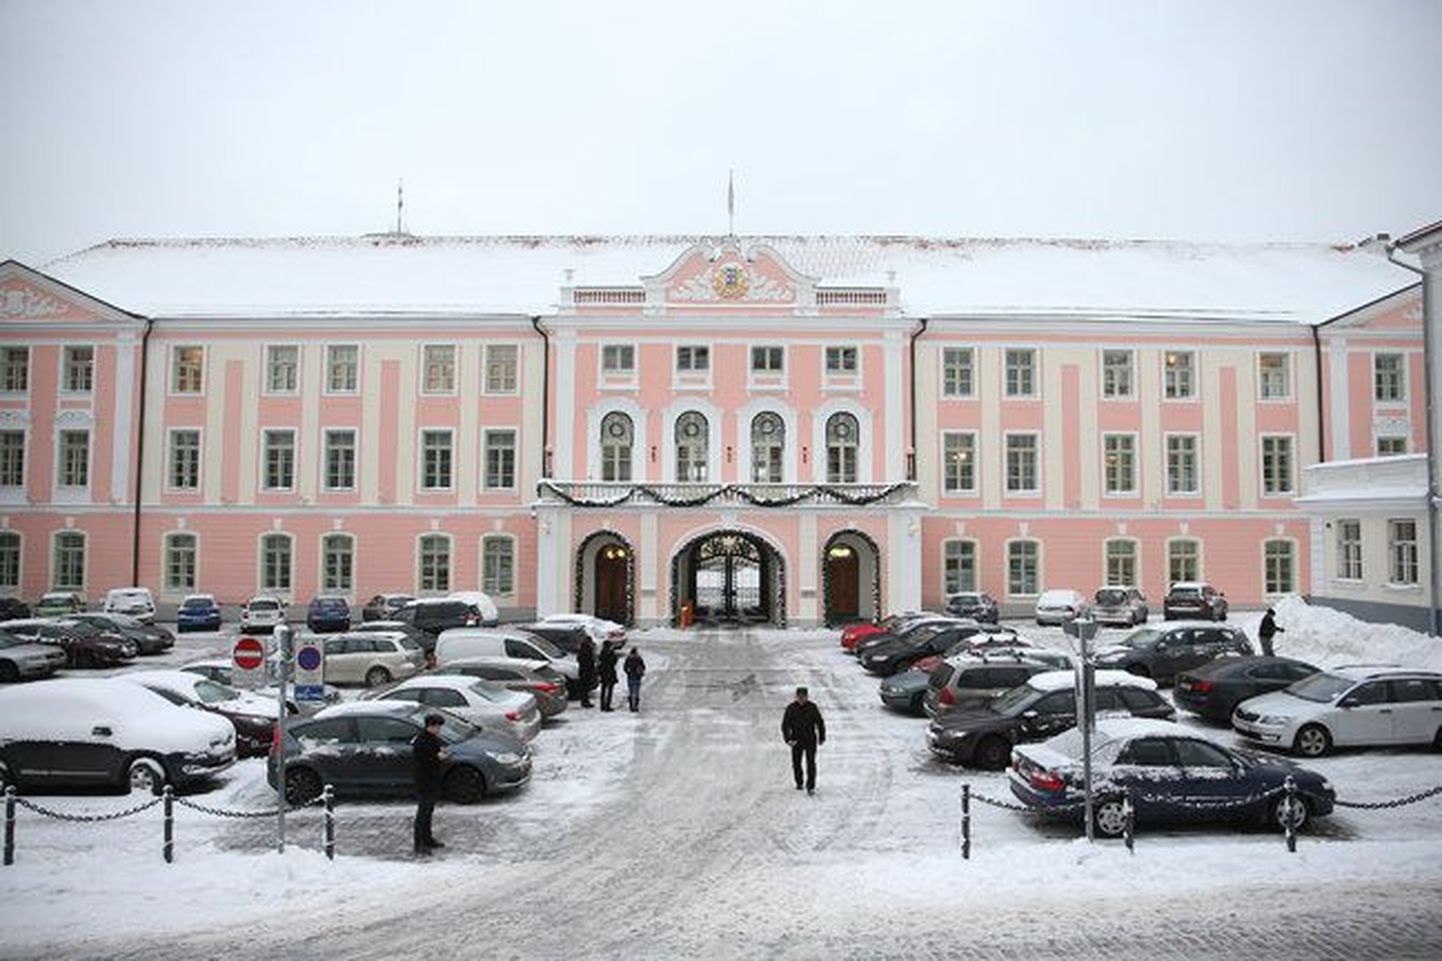 Здание парламента Эстонии (Рийгикогу).